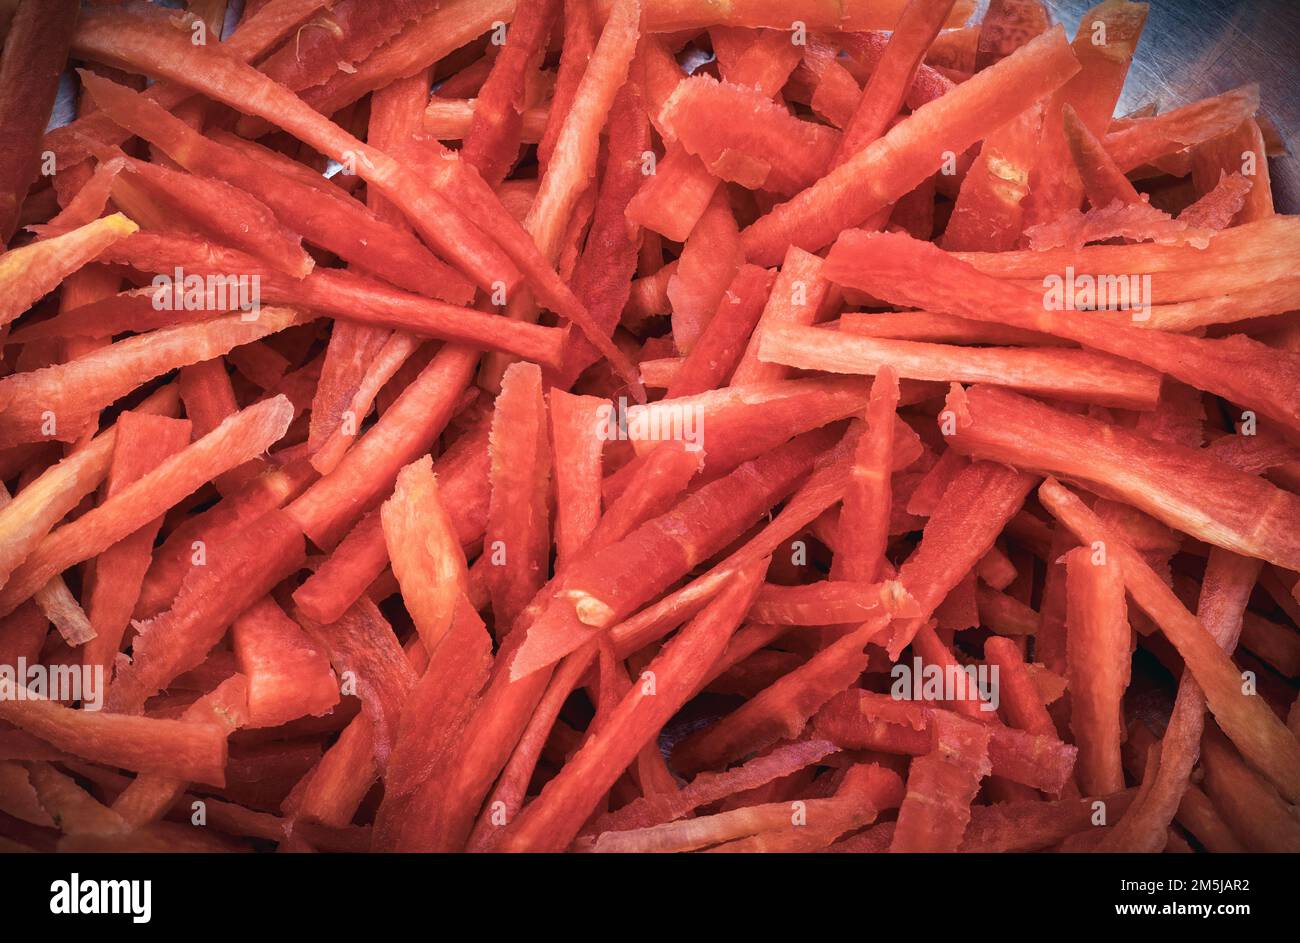 Carota grattugiata in piccoli pezzi, pila di carote fresche rosse